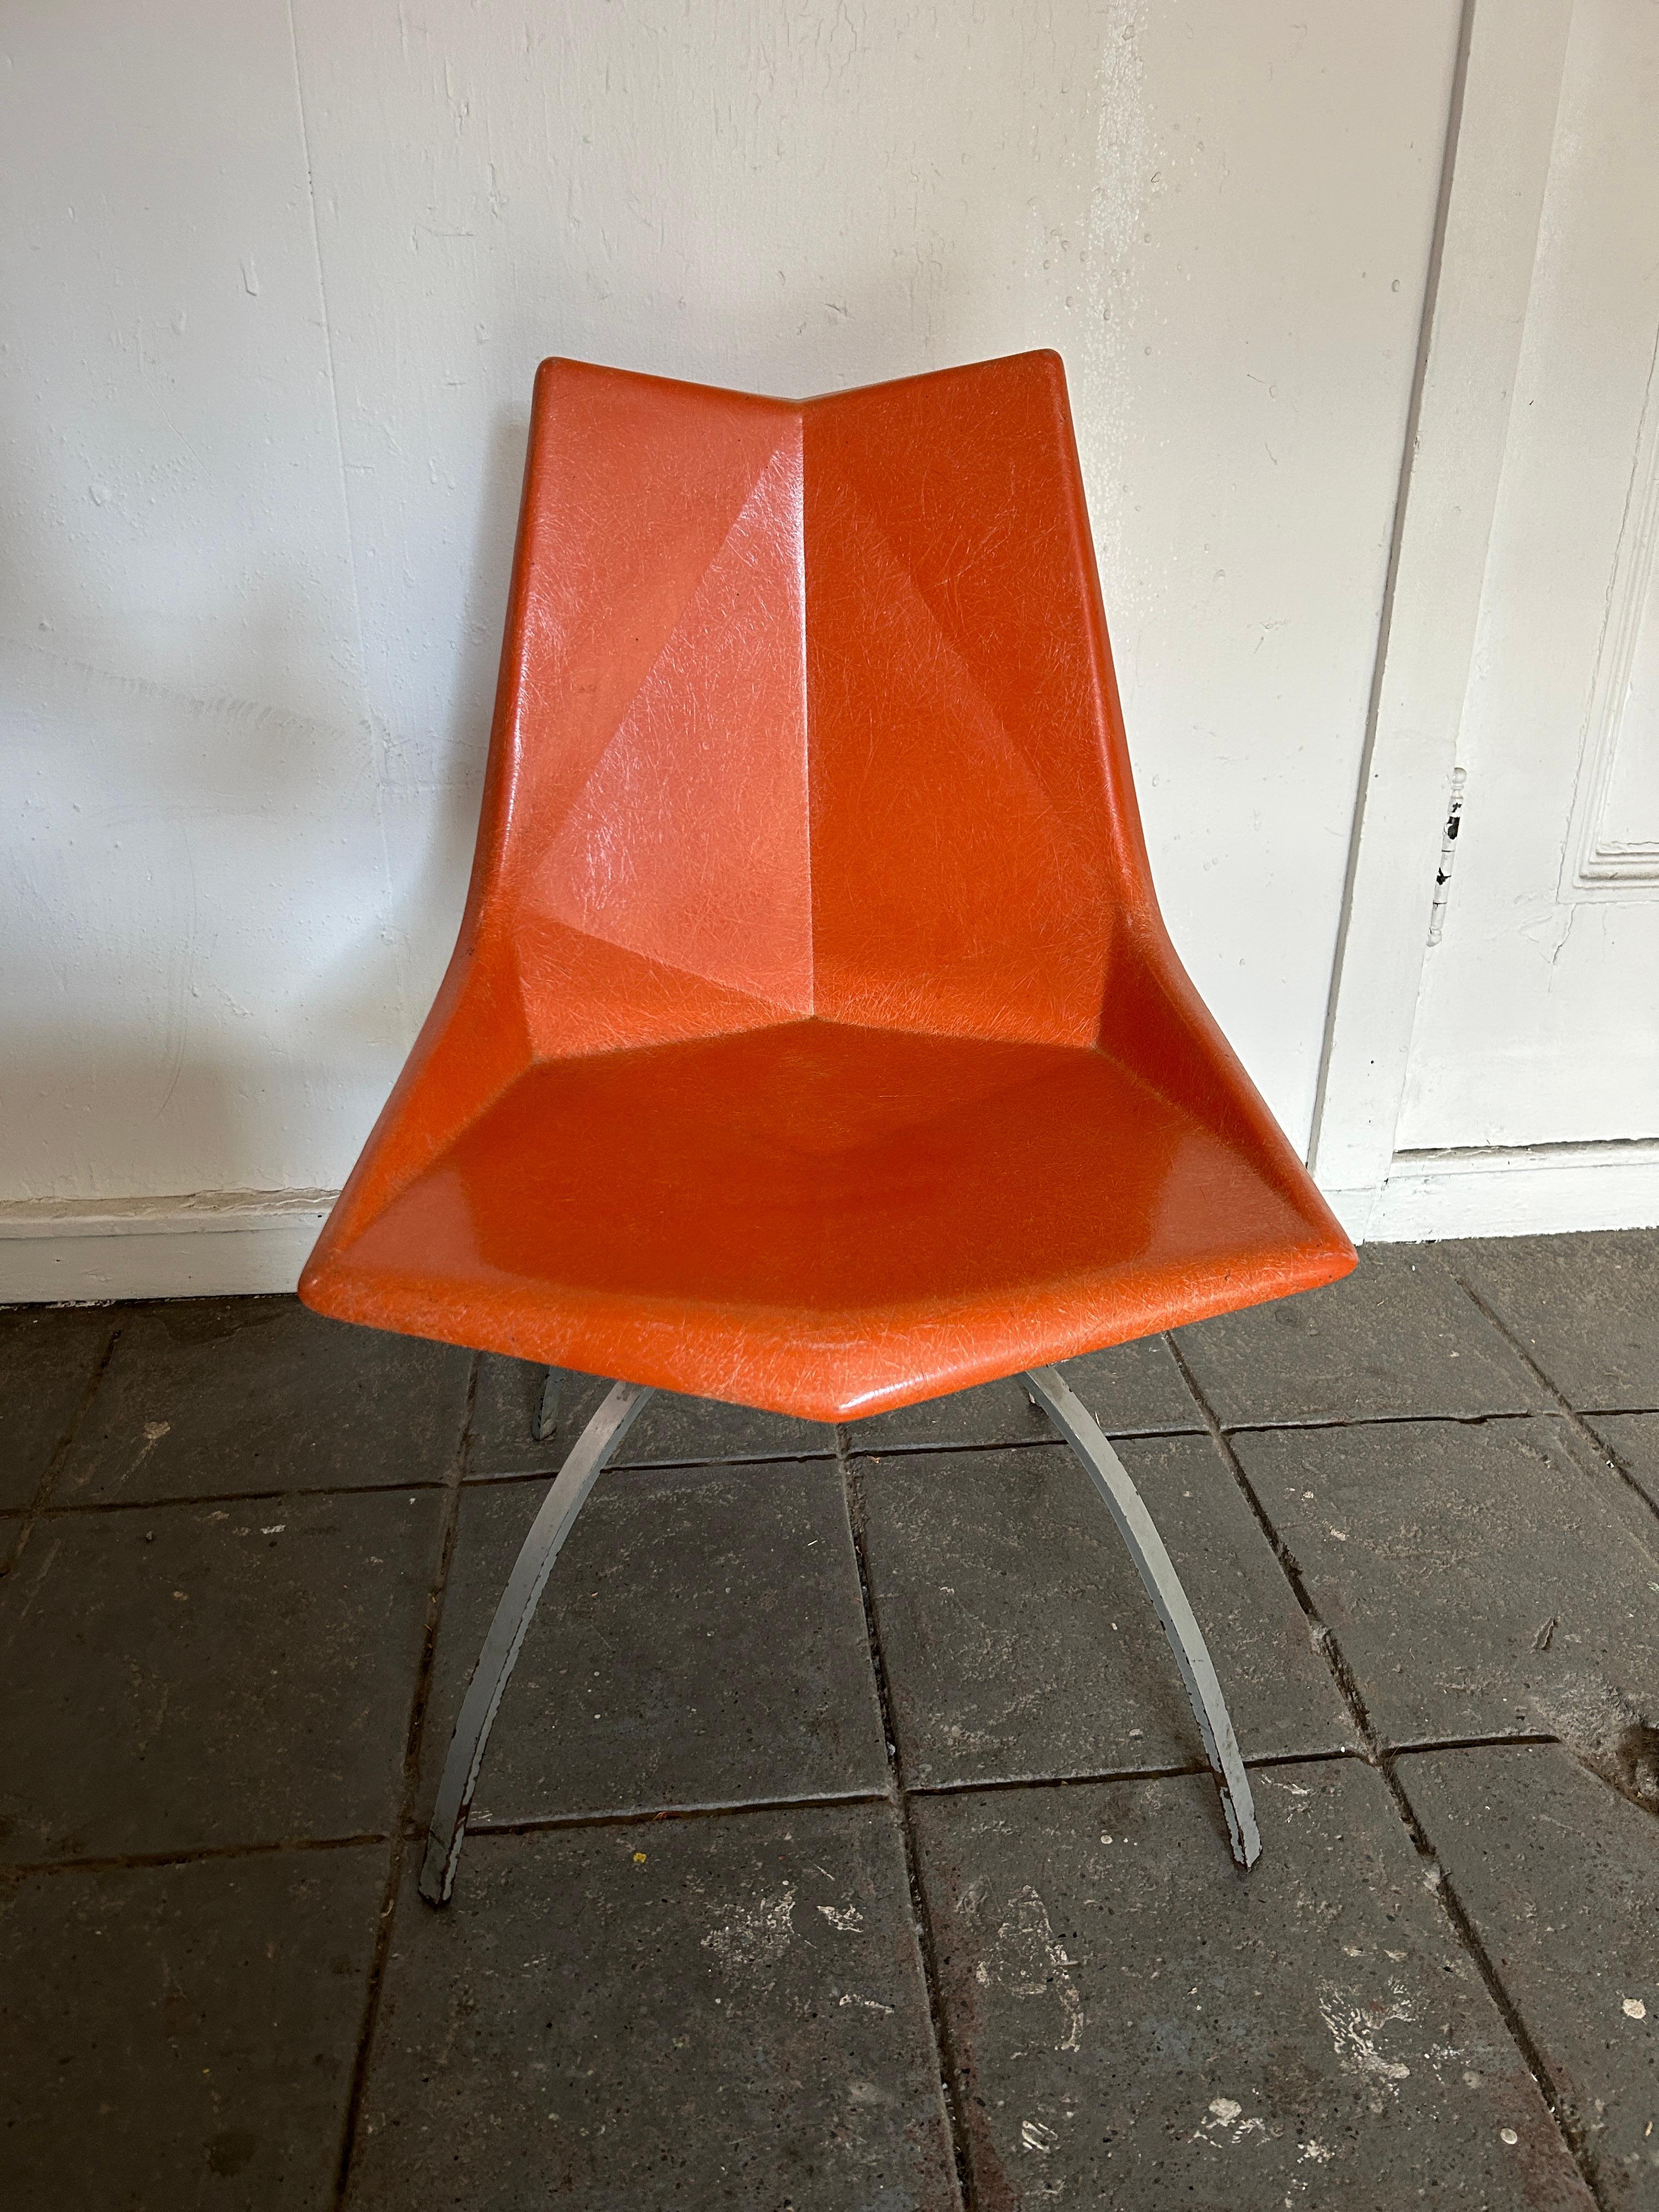 Original Mitte des Jahrhunderts orange Paul McCobb Origami Fiberglas Shell hat Stahl Spinne Basen. Can drinnen oder draußen verwendet werden. Diese Beistellstühle sind von Paul McCobb von St. John Seating Corp. New York. Sehr seltene Stühle. Das